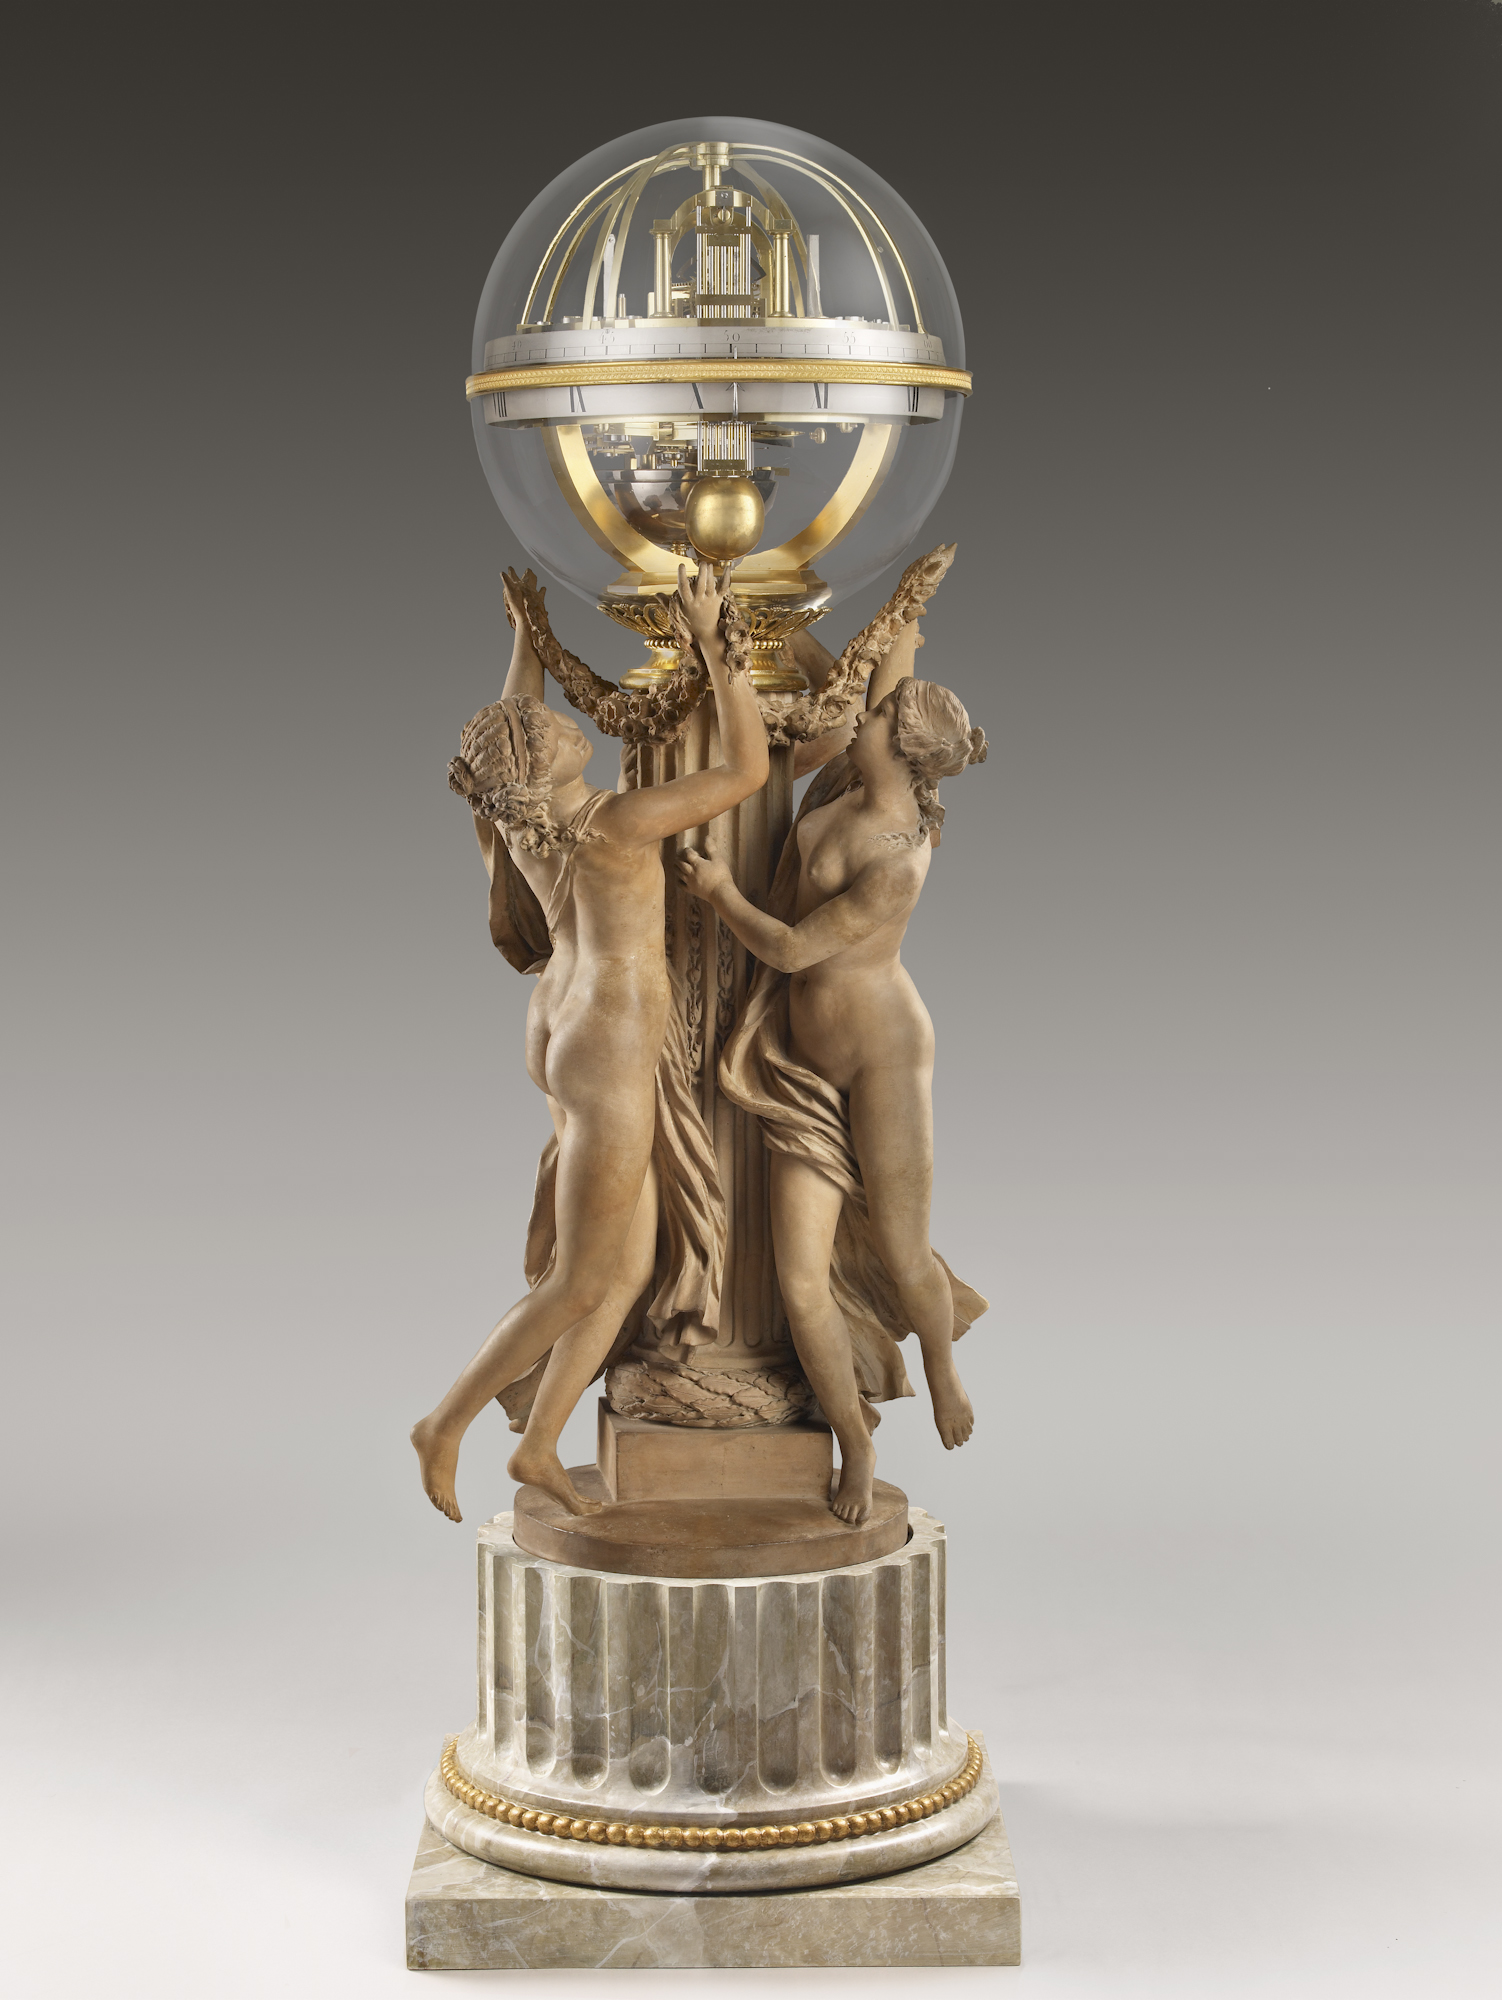 Az idő tánca: Három nimfa egy órát támaszt by Claude Michel, called Clodion - 1788 - 103.5 cm 